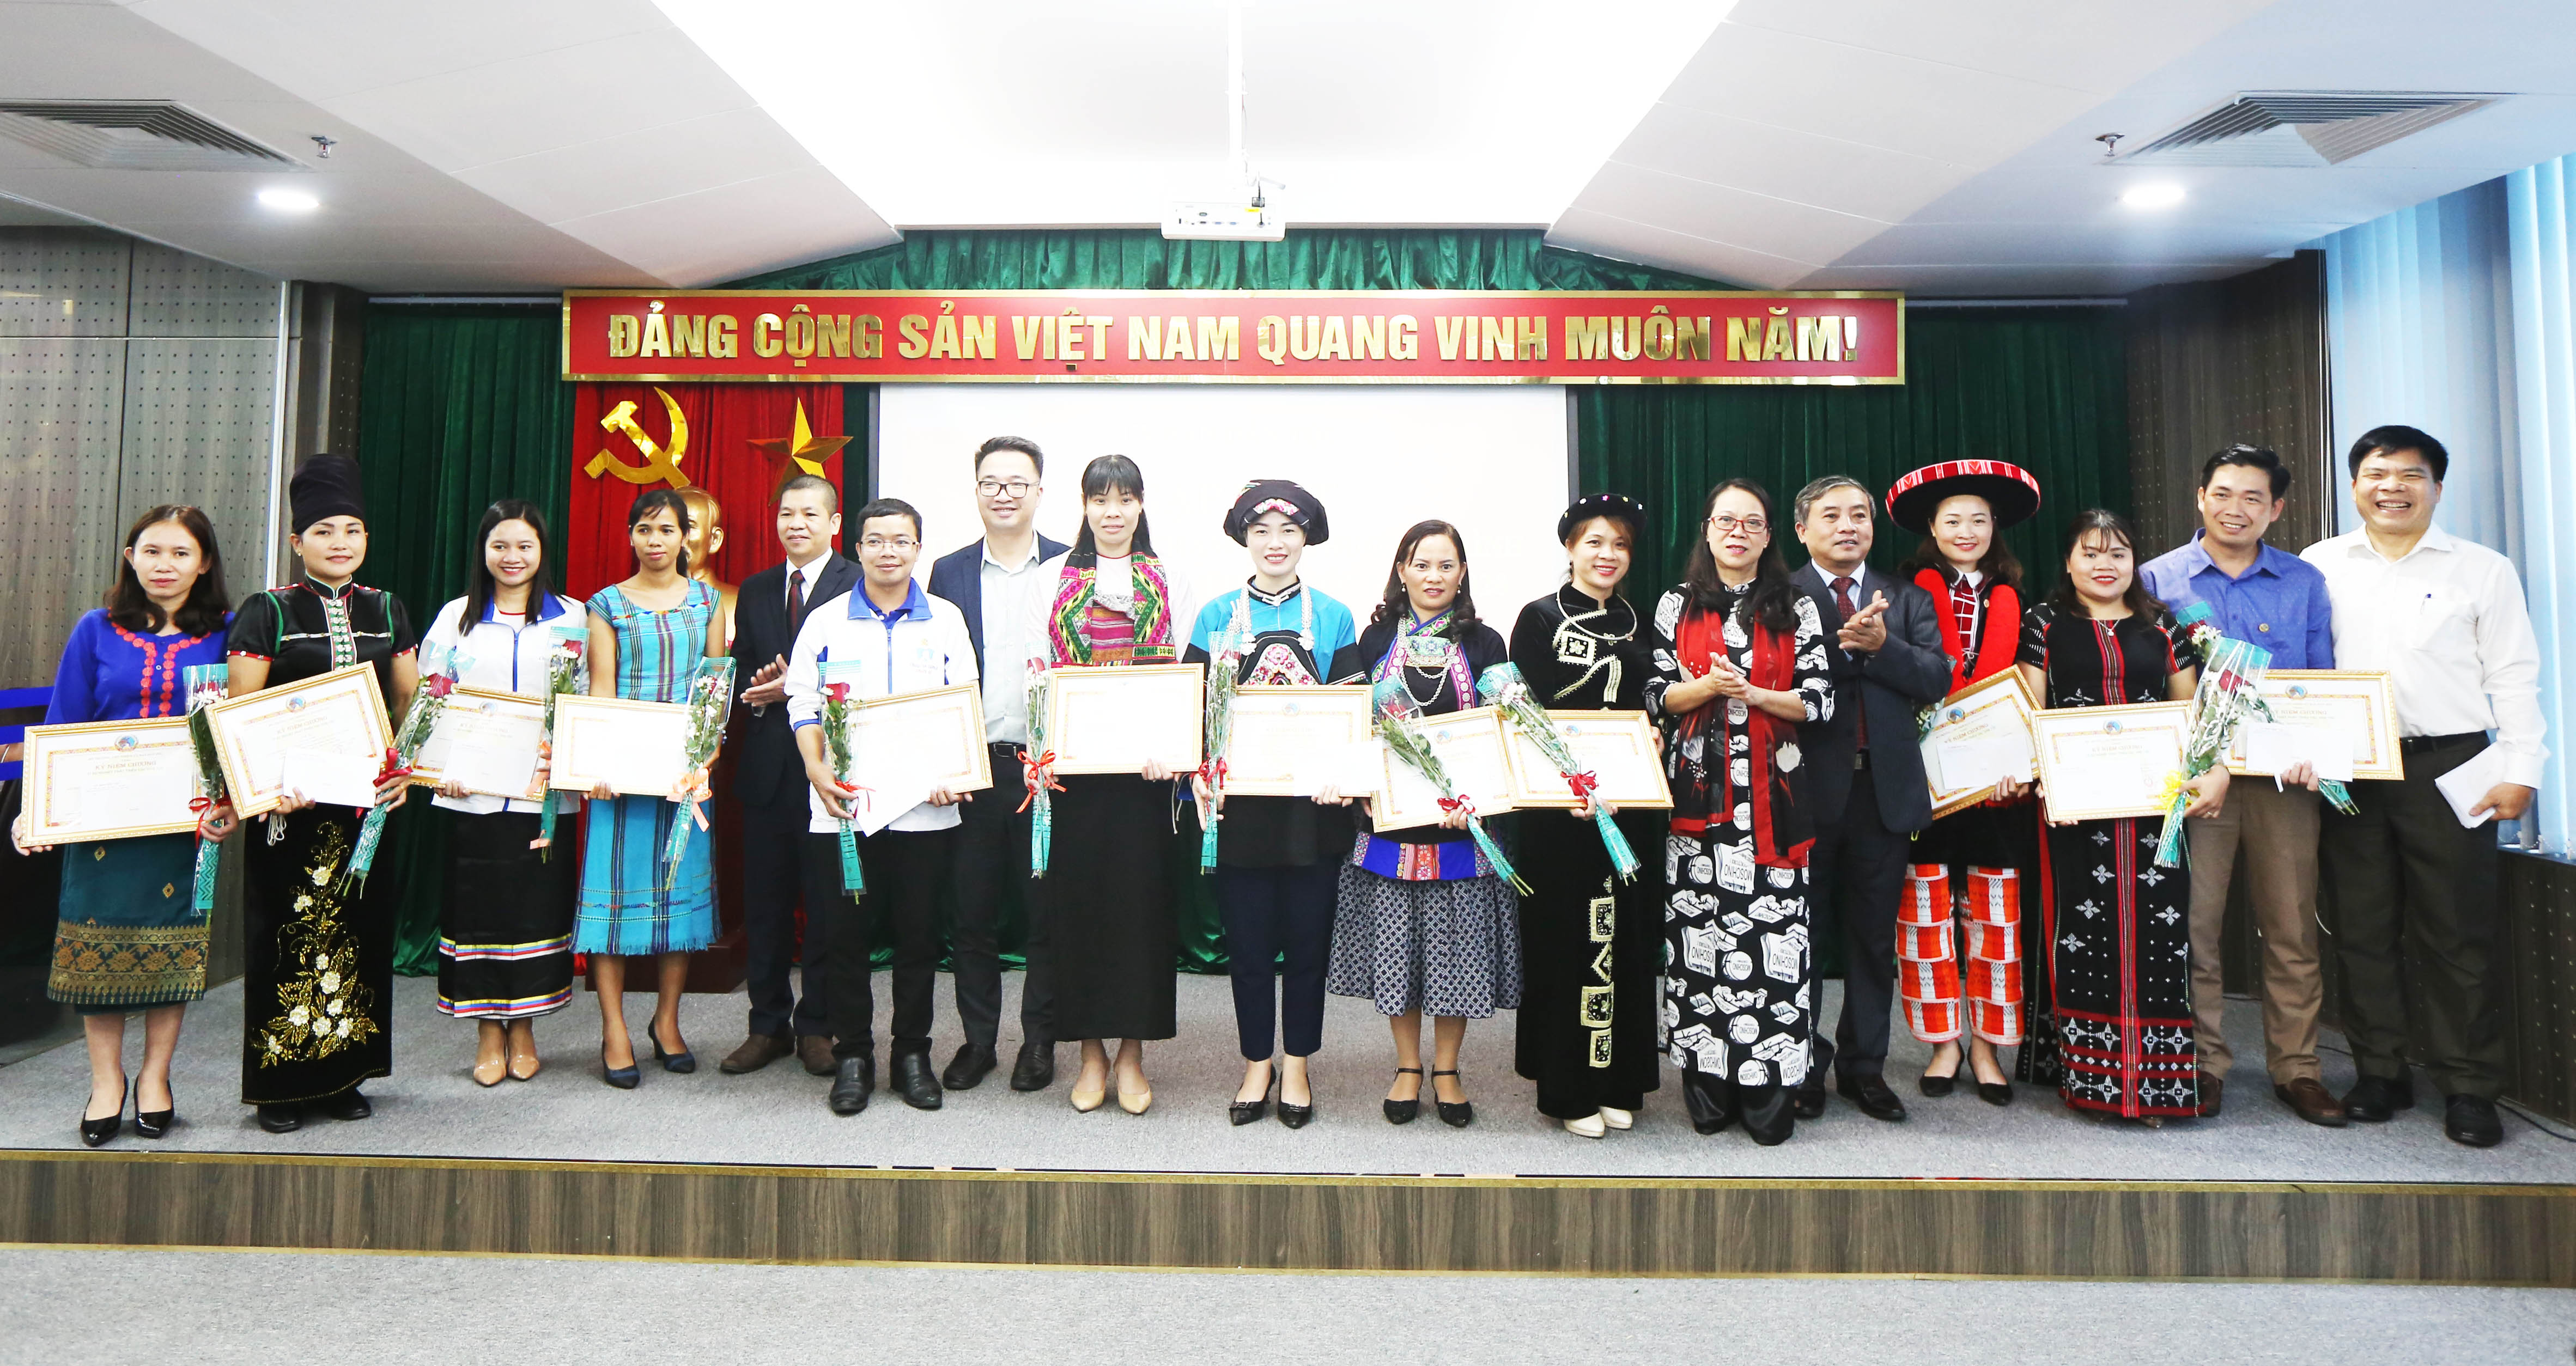 Thứ Trưởng, Phó Chủ nhiệm UBDT Hoàng Thị Hạnh trao quà của UBDT cho các thầy cô giáo